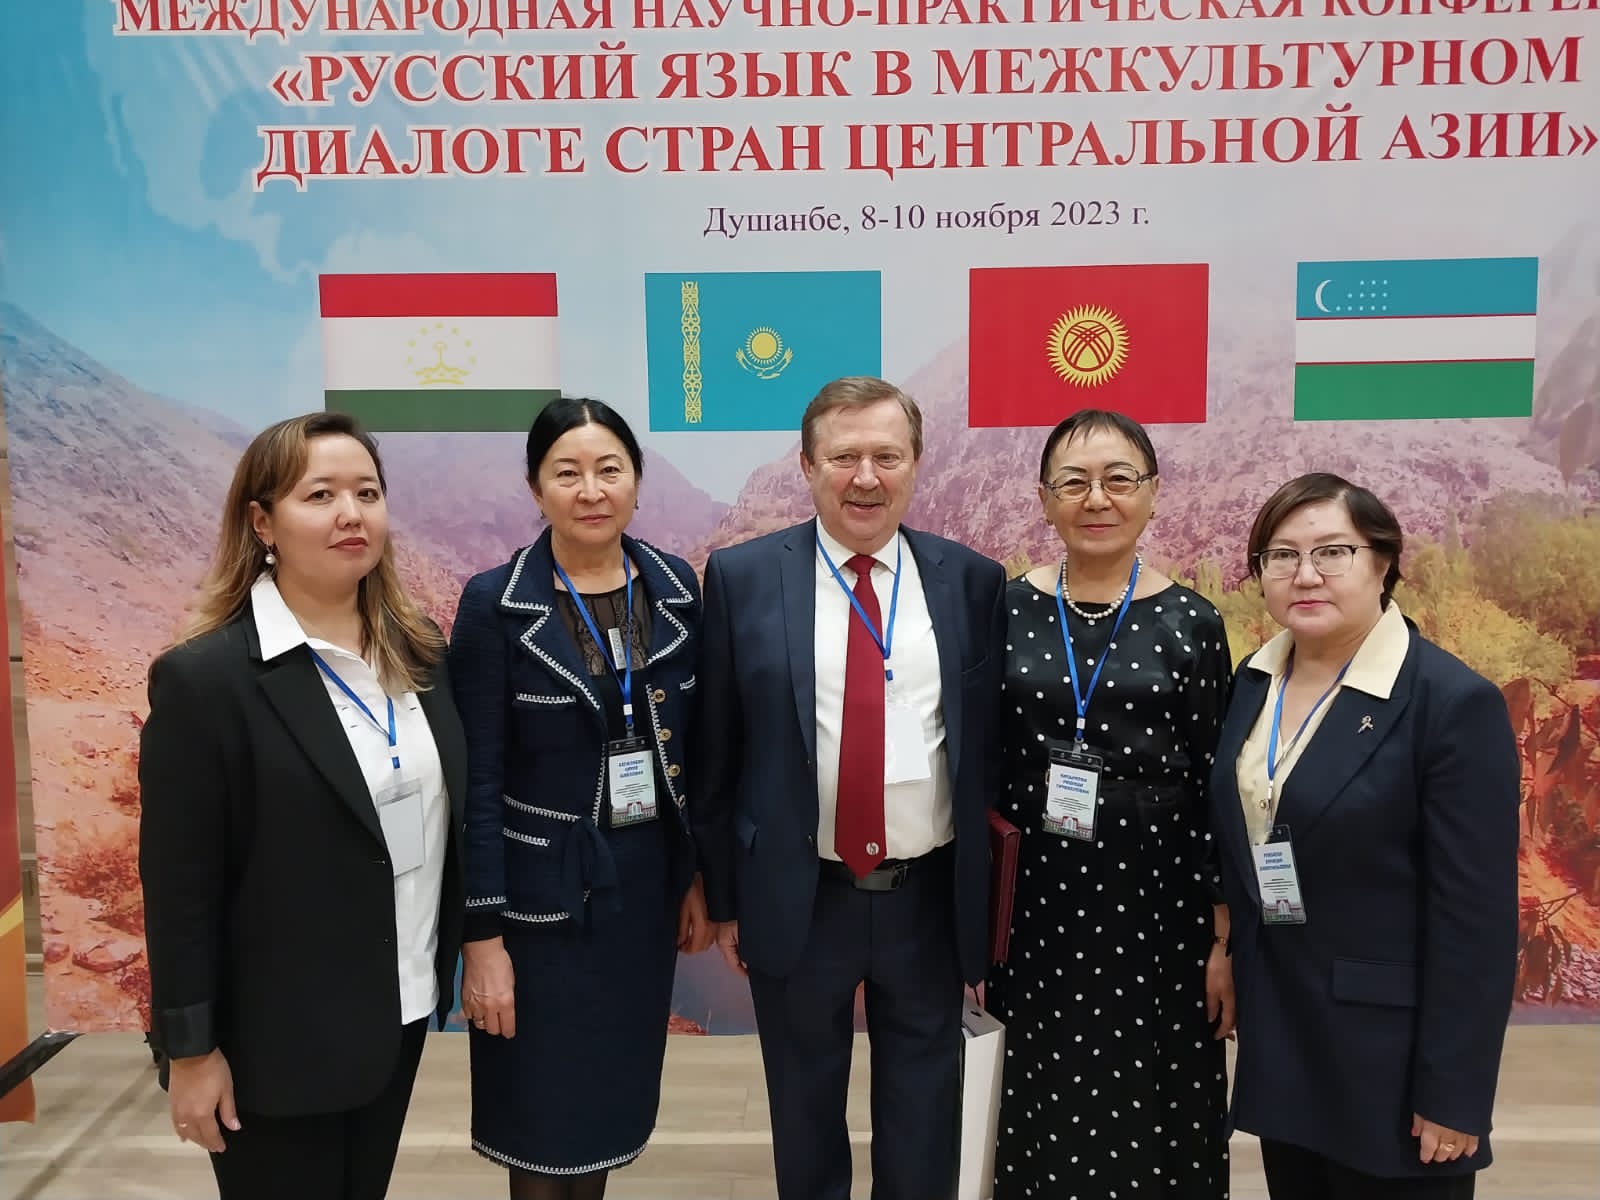 8-10 ноября 2013 г. в городе Душанбе  состоялась Международная научно-практическая конференция «Русский язык в межкультурном диалоге стран Центральной Азии»